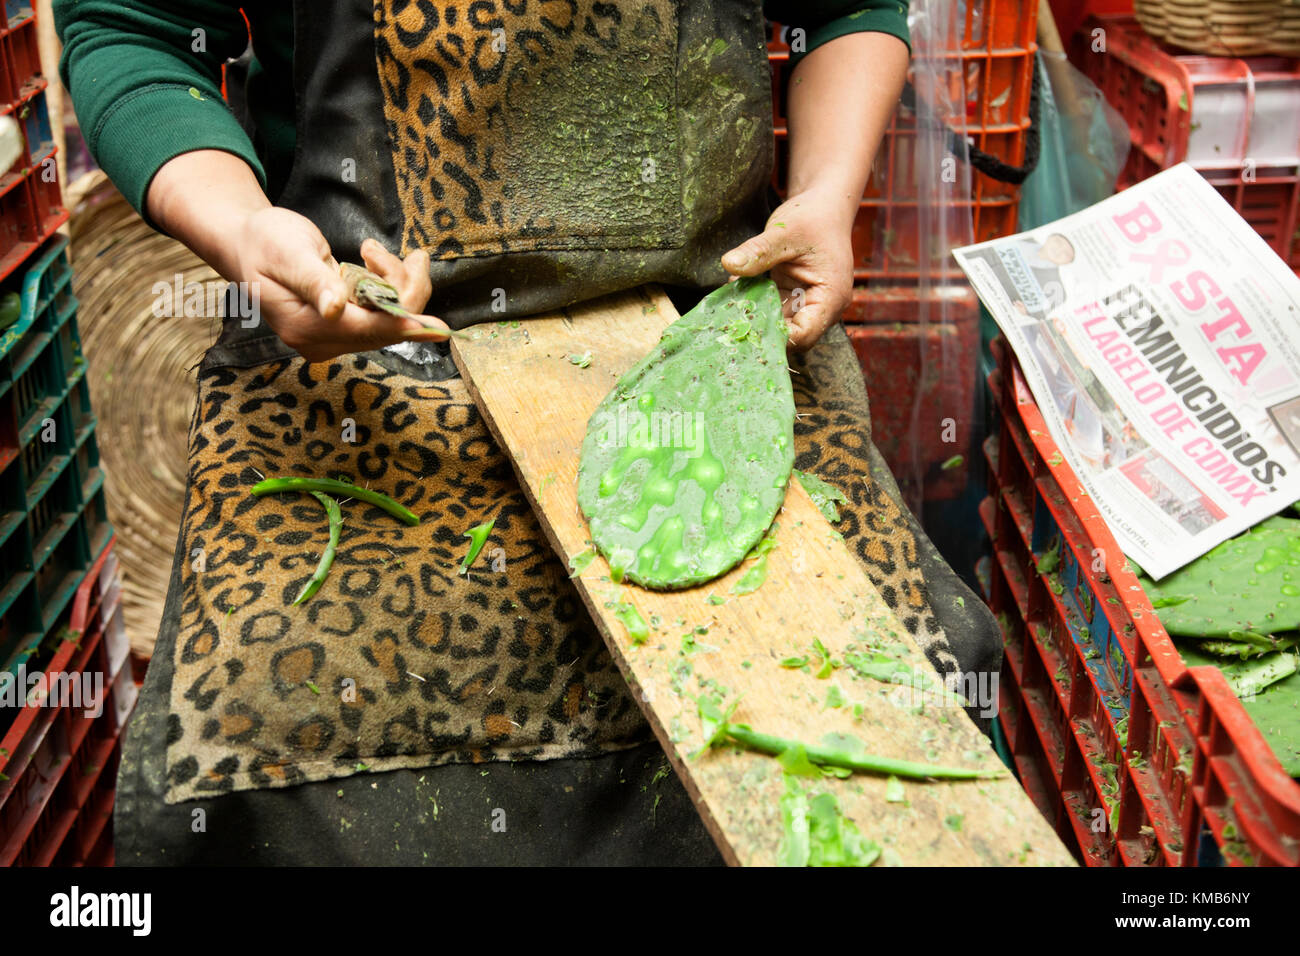 Nopales, Opuntia cacti, being prepared for sale in Mexico City's Mercado de la Merced. Stock Photo